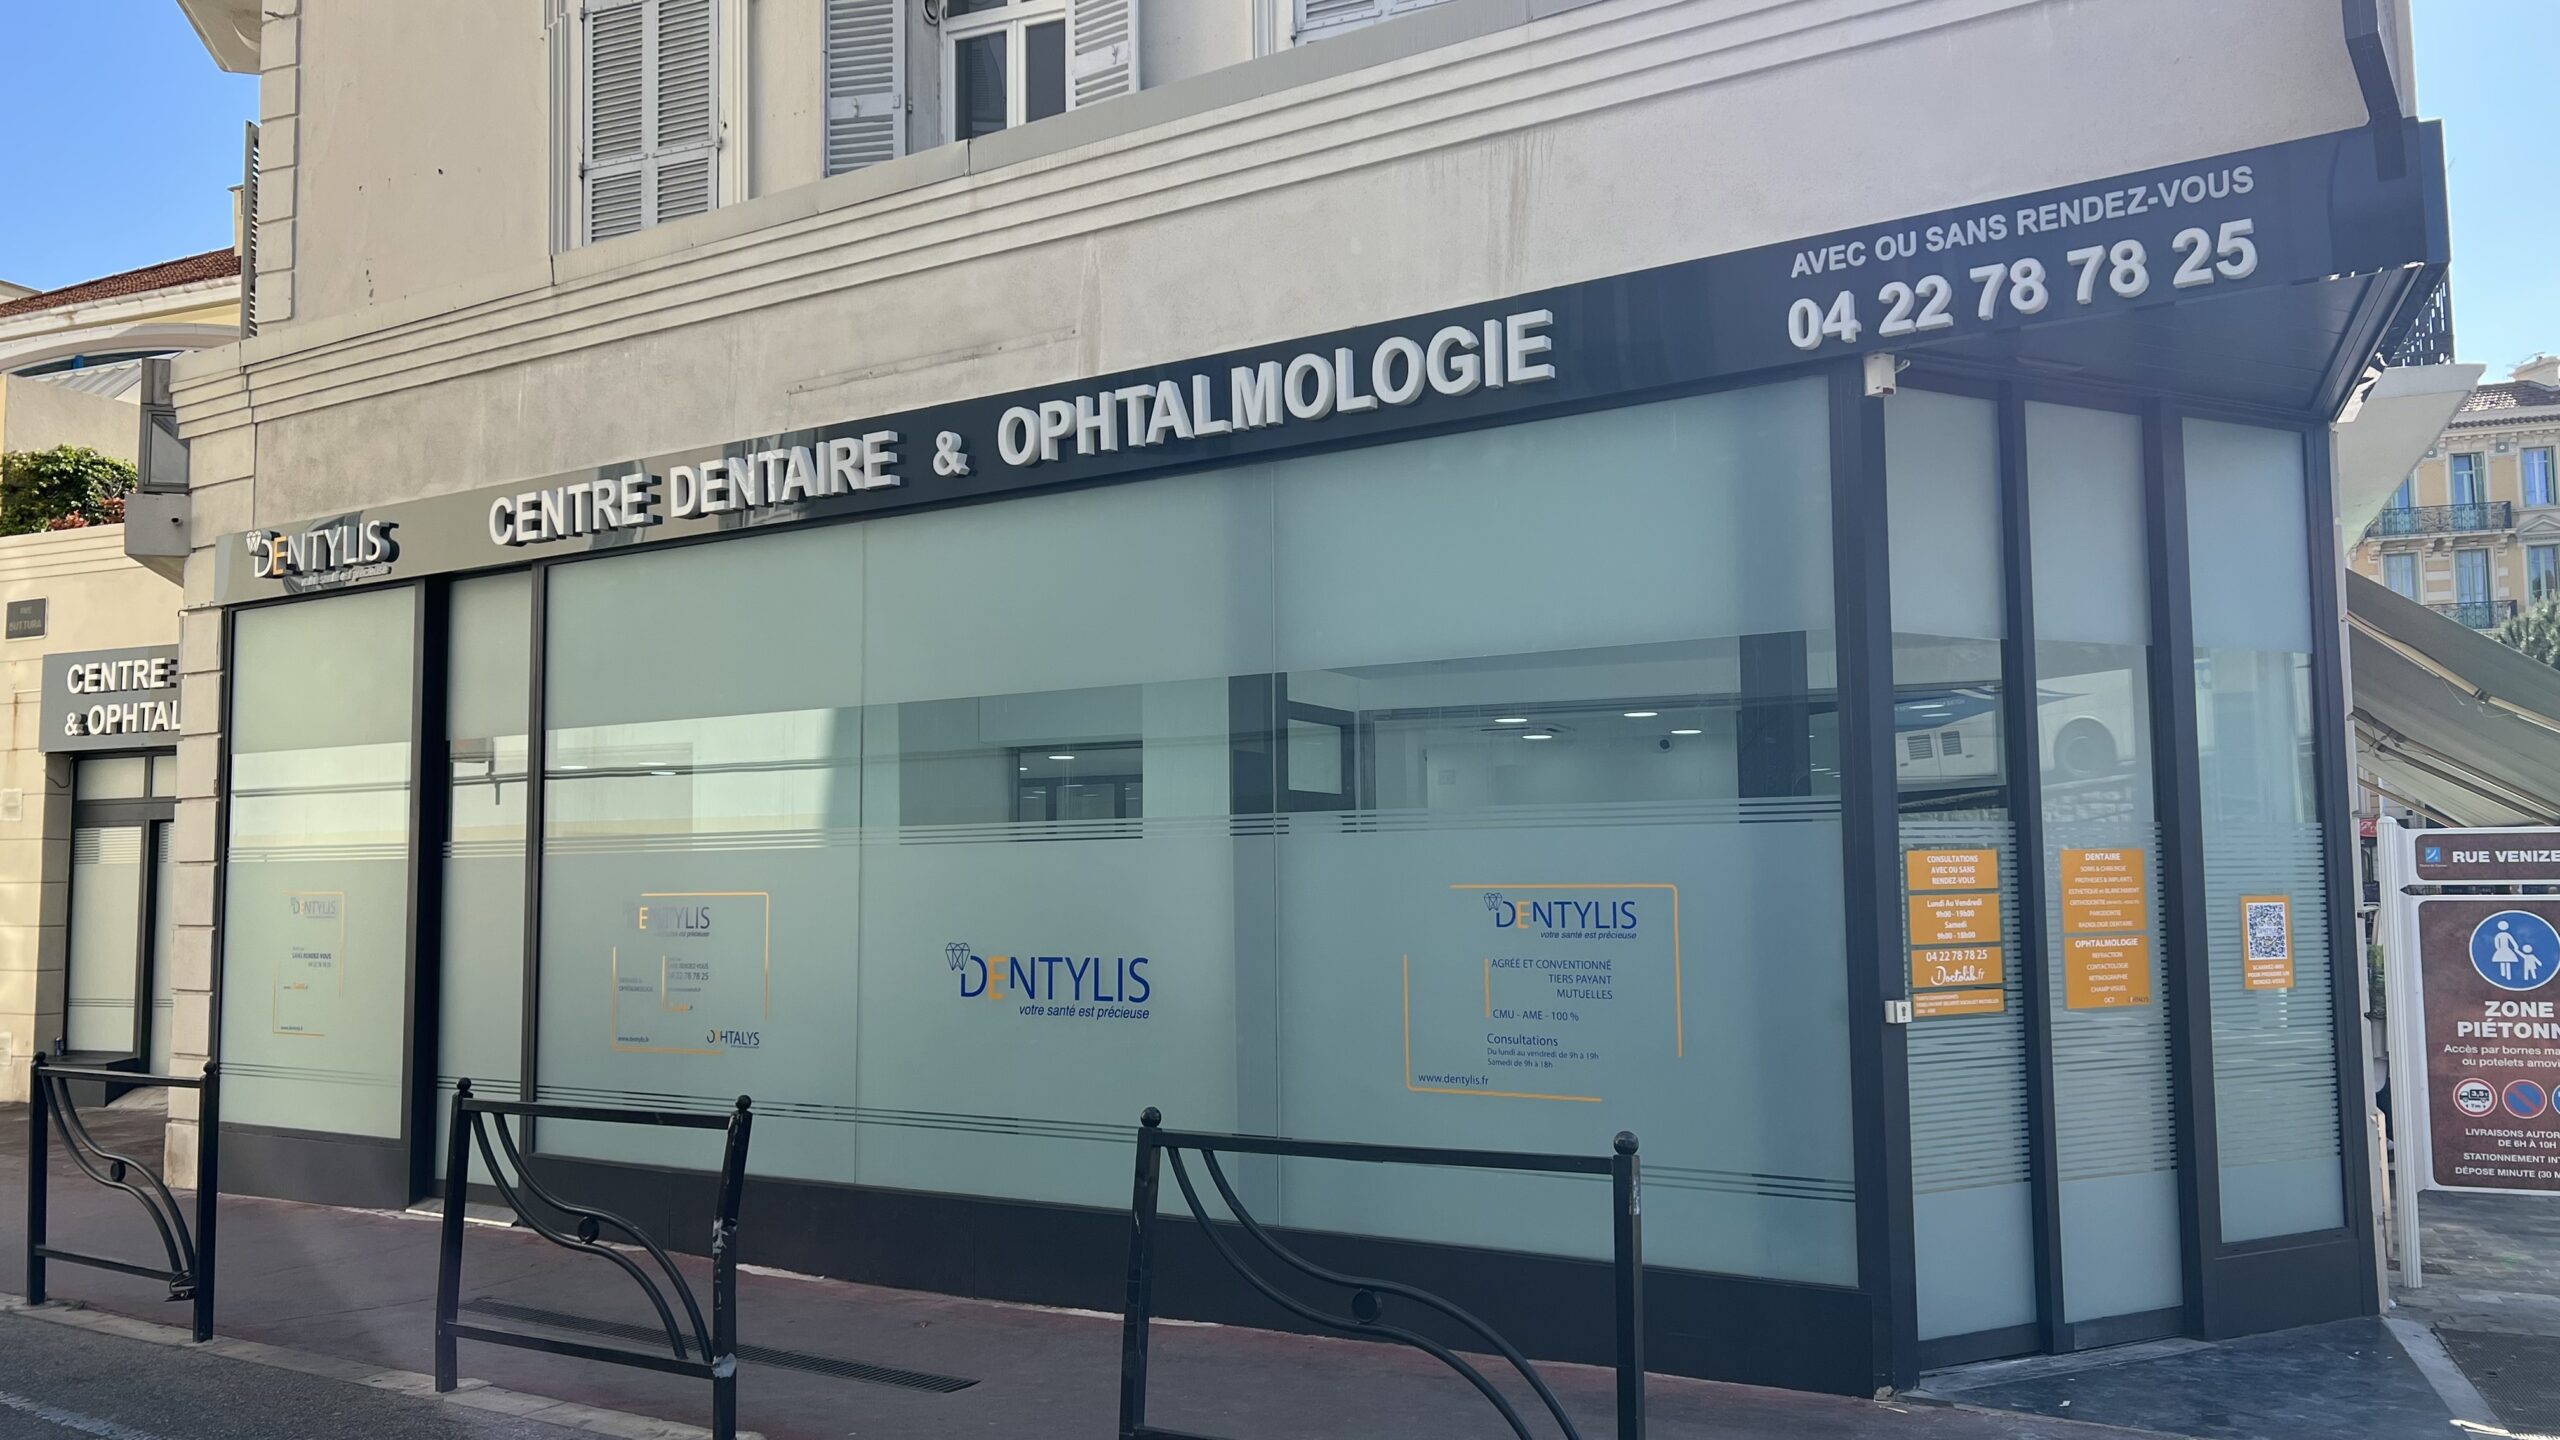 Centre Dentaire et Ophtalmologie Cannes - Dentylis